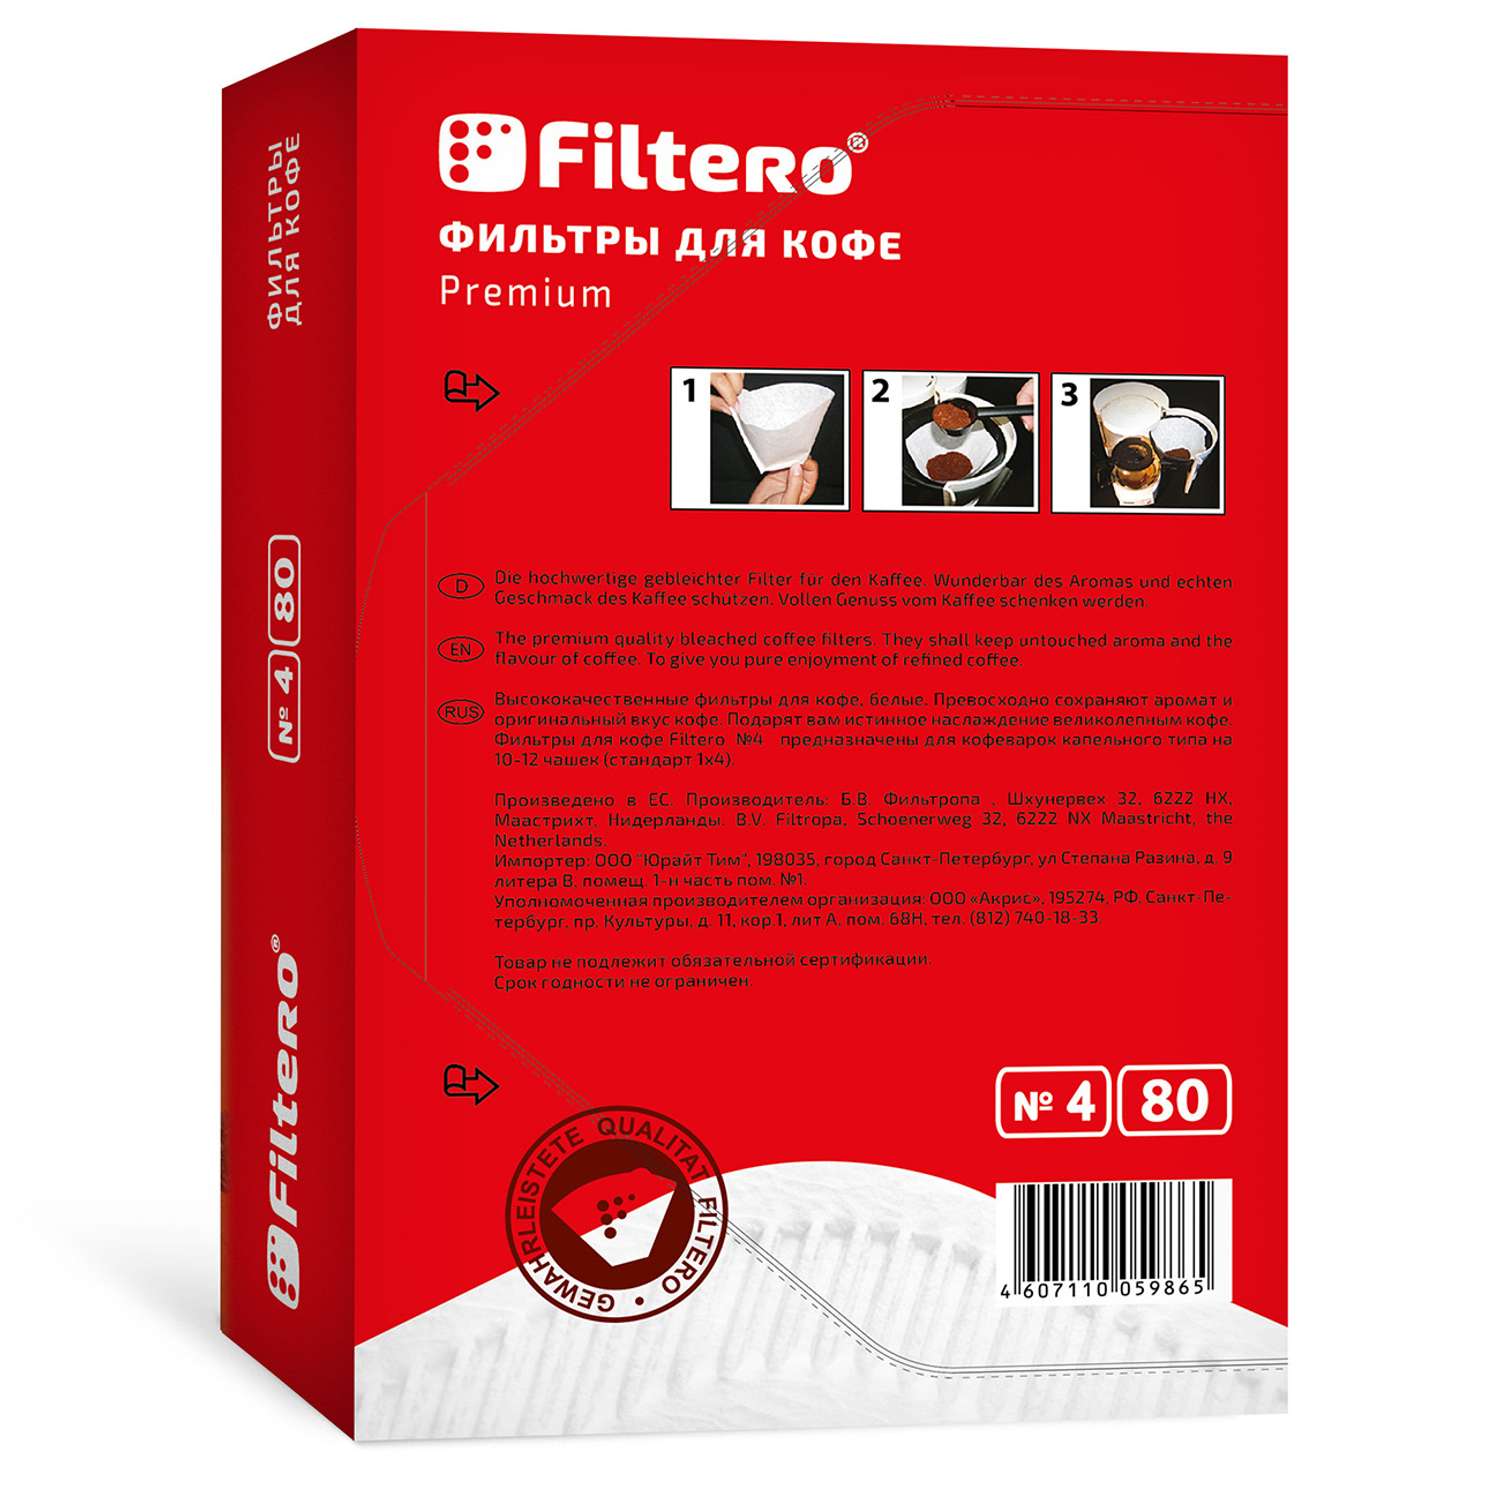 Комплект фильтров Filtero для кофеварки №4/80шт белые Premium - фото 2